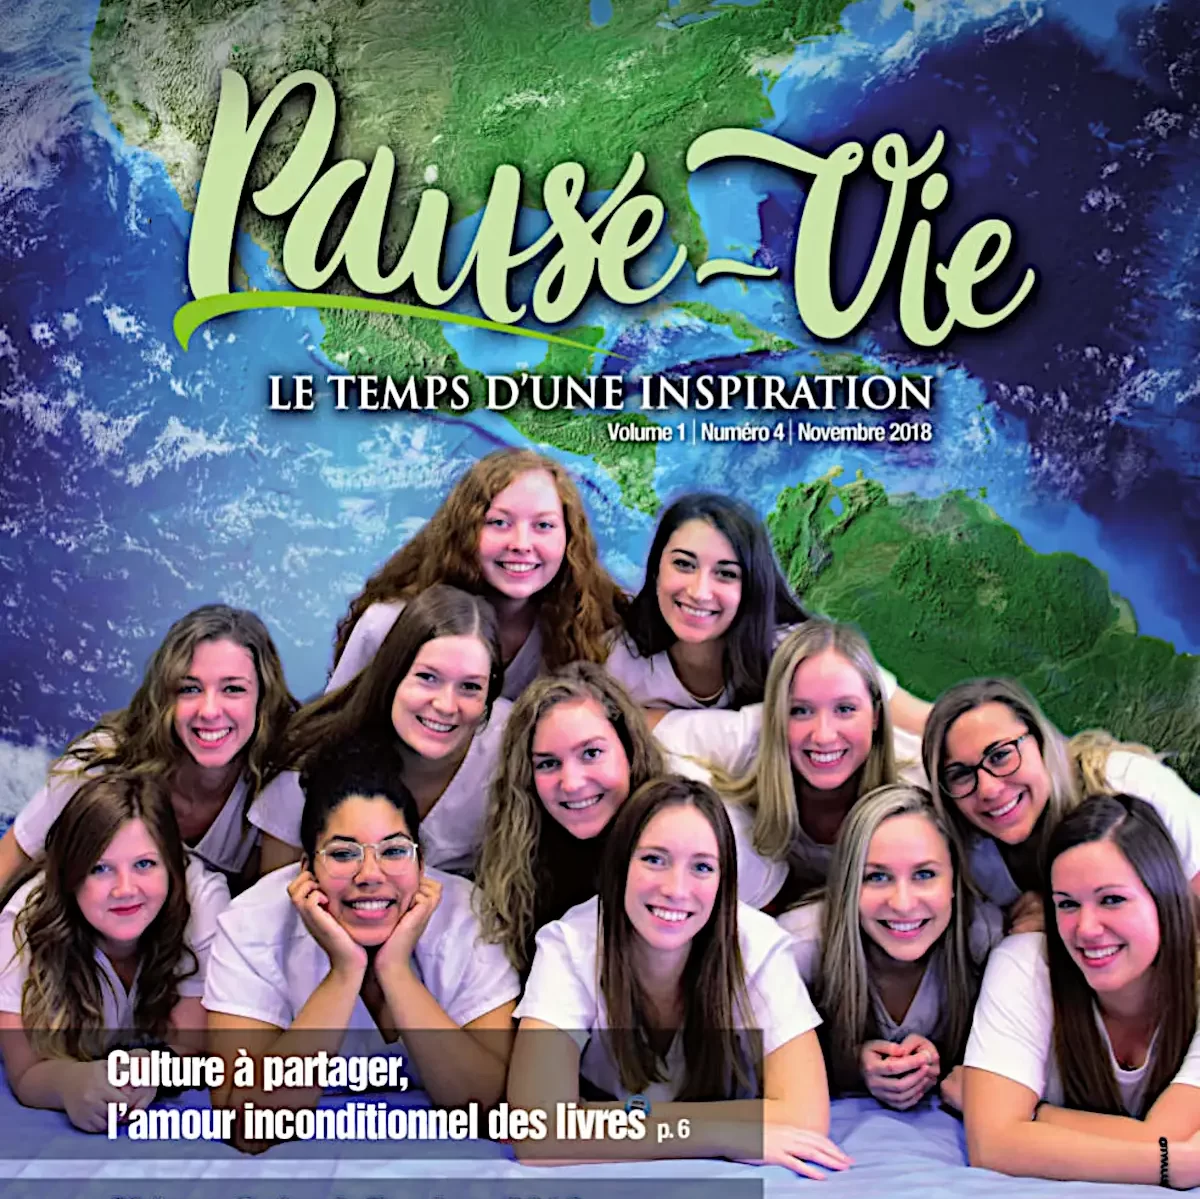  Couverture du magazine Pause-Vie (novembre 2018).